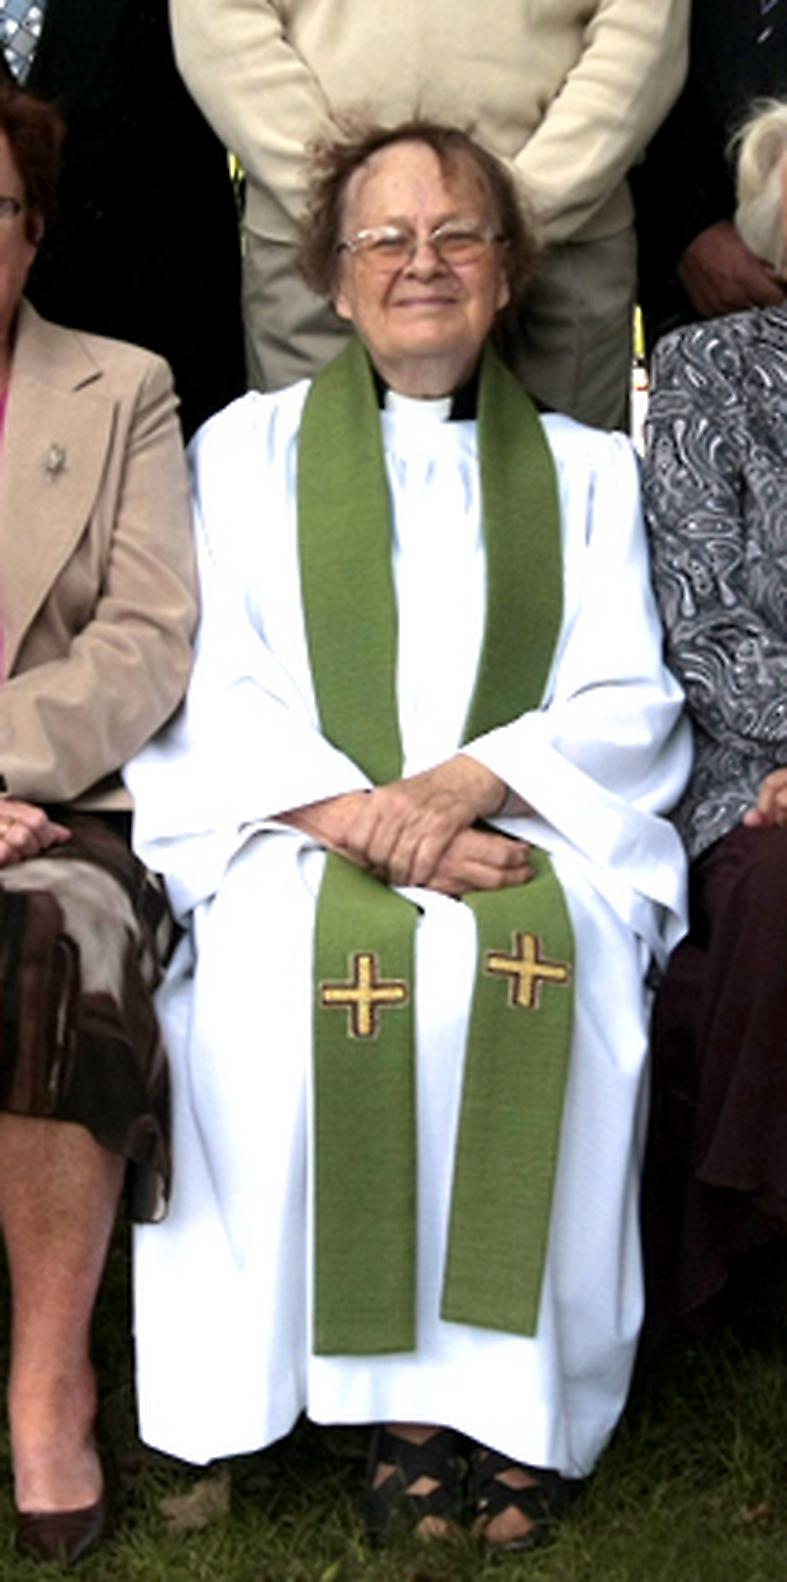 söks med helikopter Silleruds församling har varit Kerstin Segerbergs liv i många år. Hon var tidigare kyrkoherde. Sedan den 15 december är hon spårlöst borta.